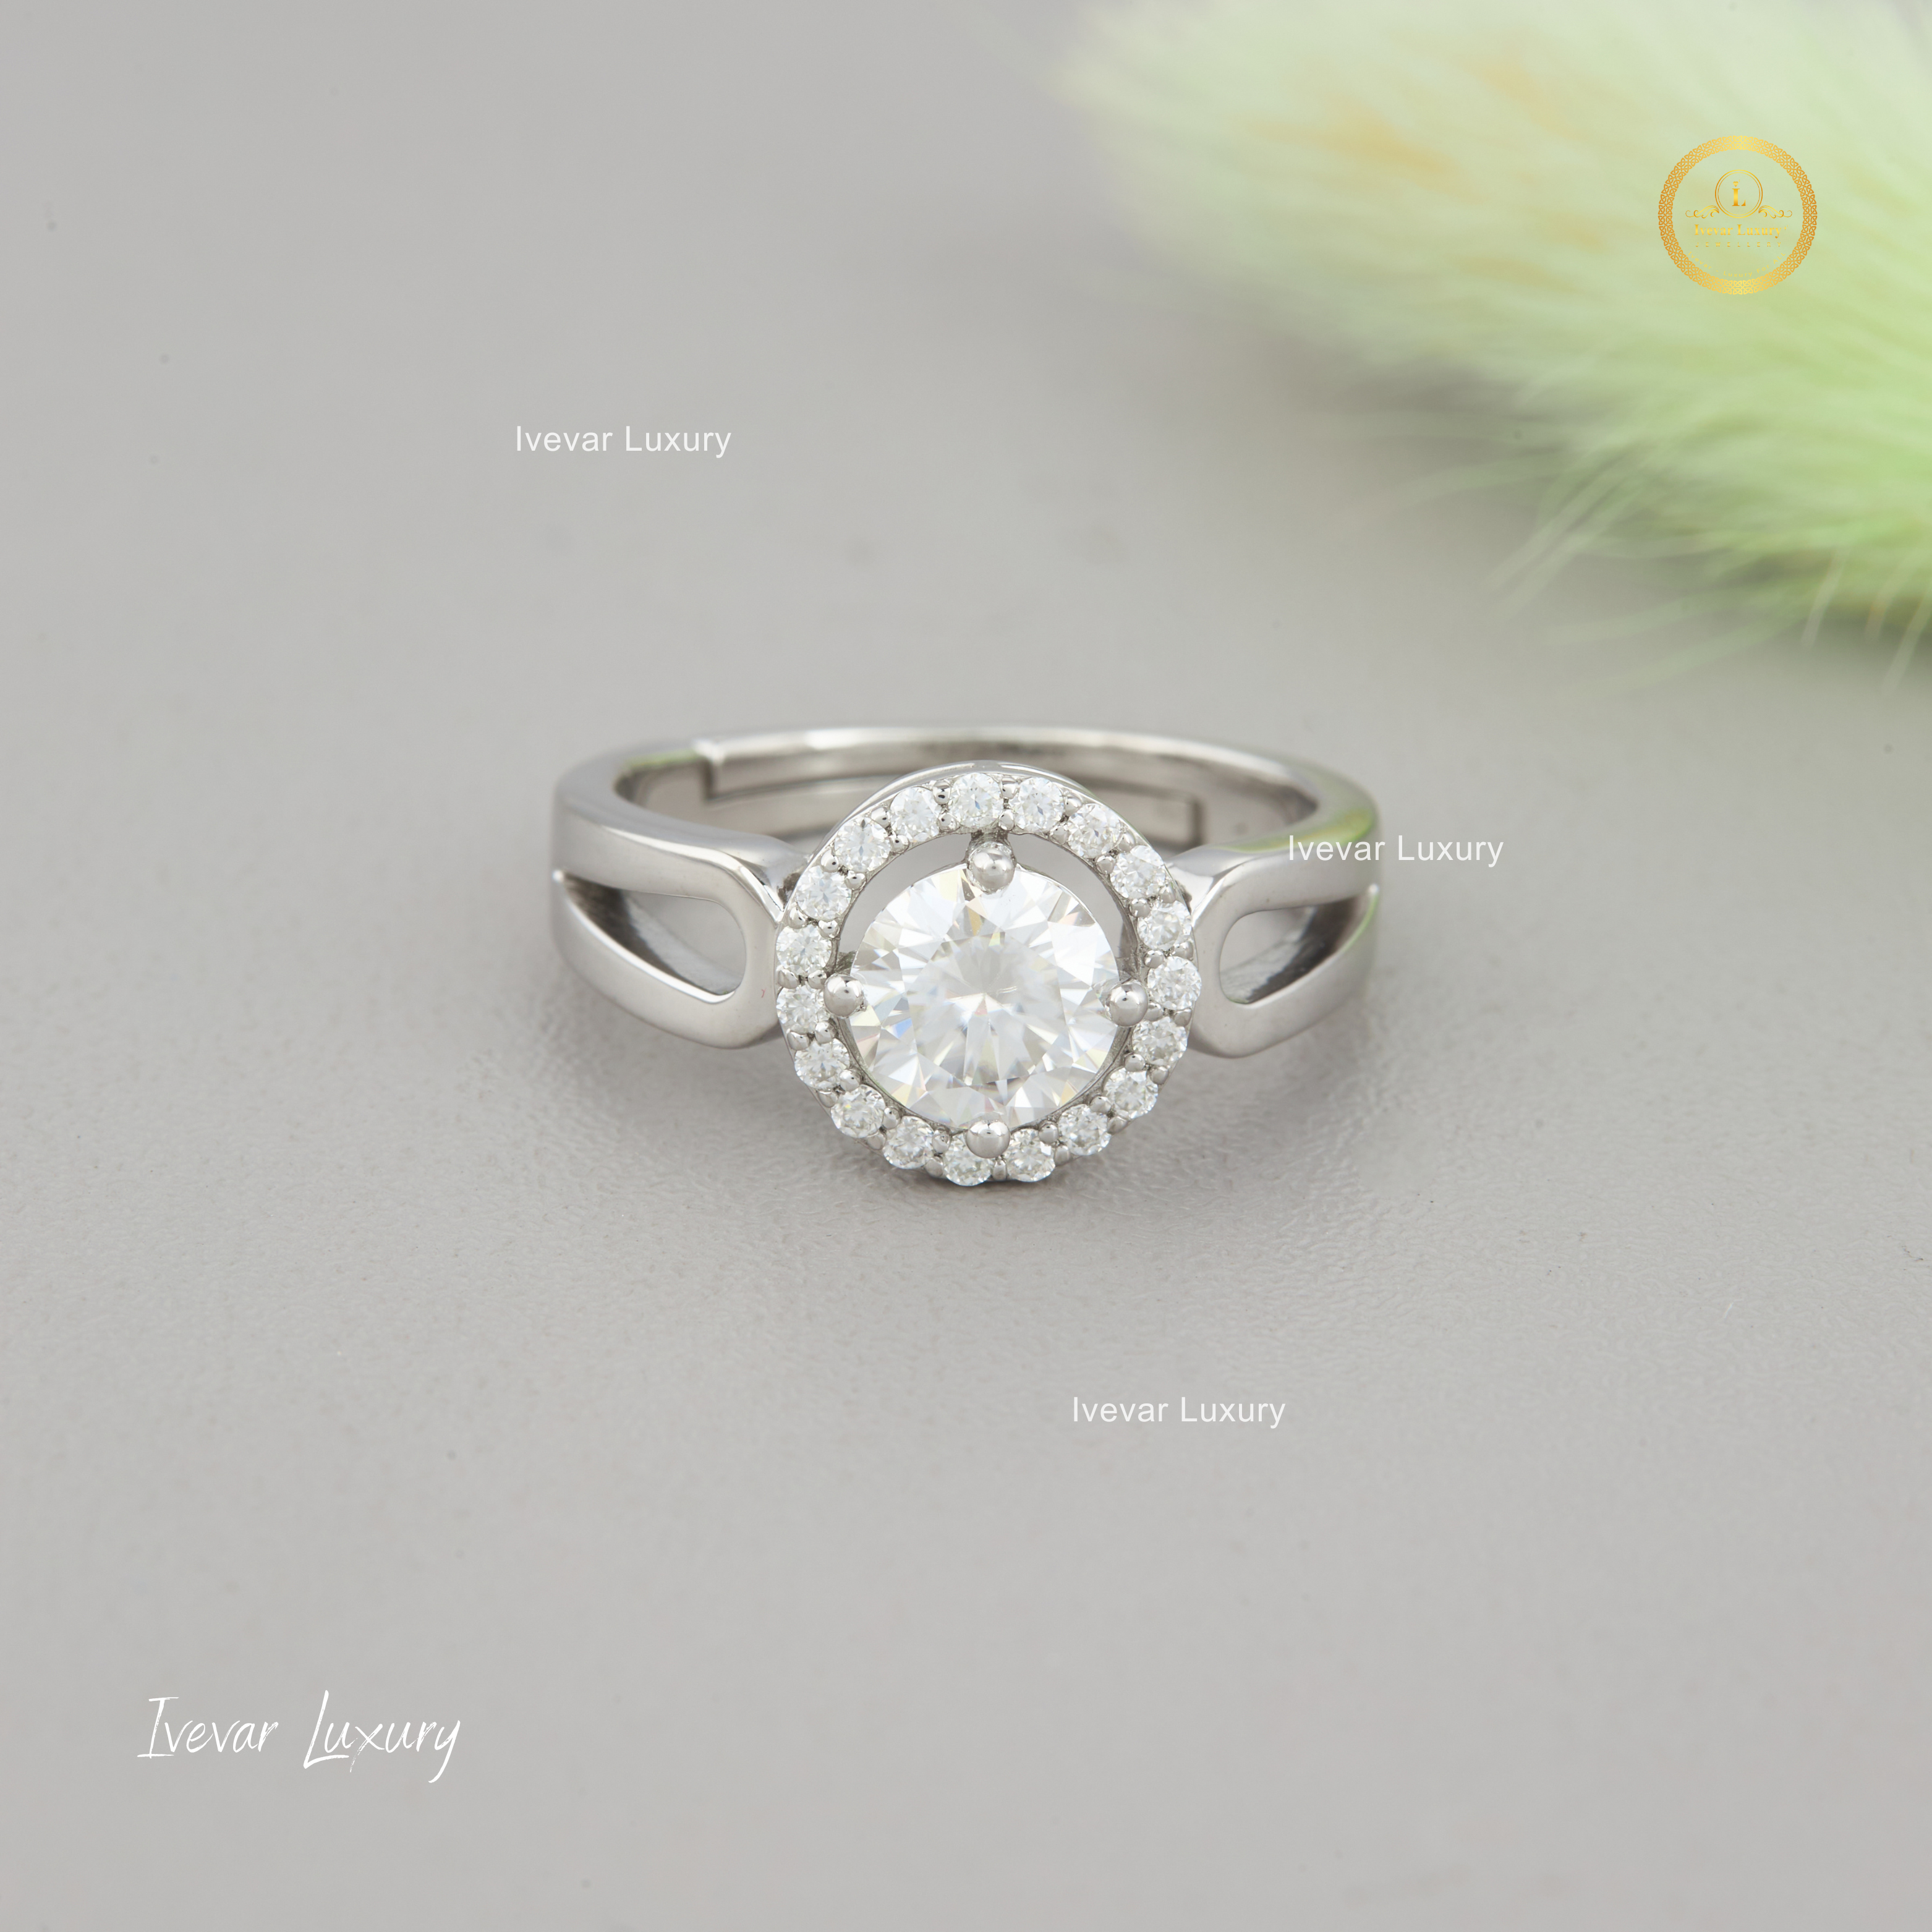 Ivevar 925 Silver Round Moissanite Diamond Engagement Ring For Women